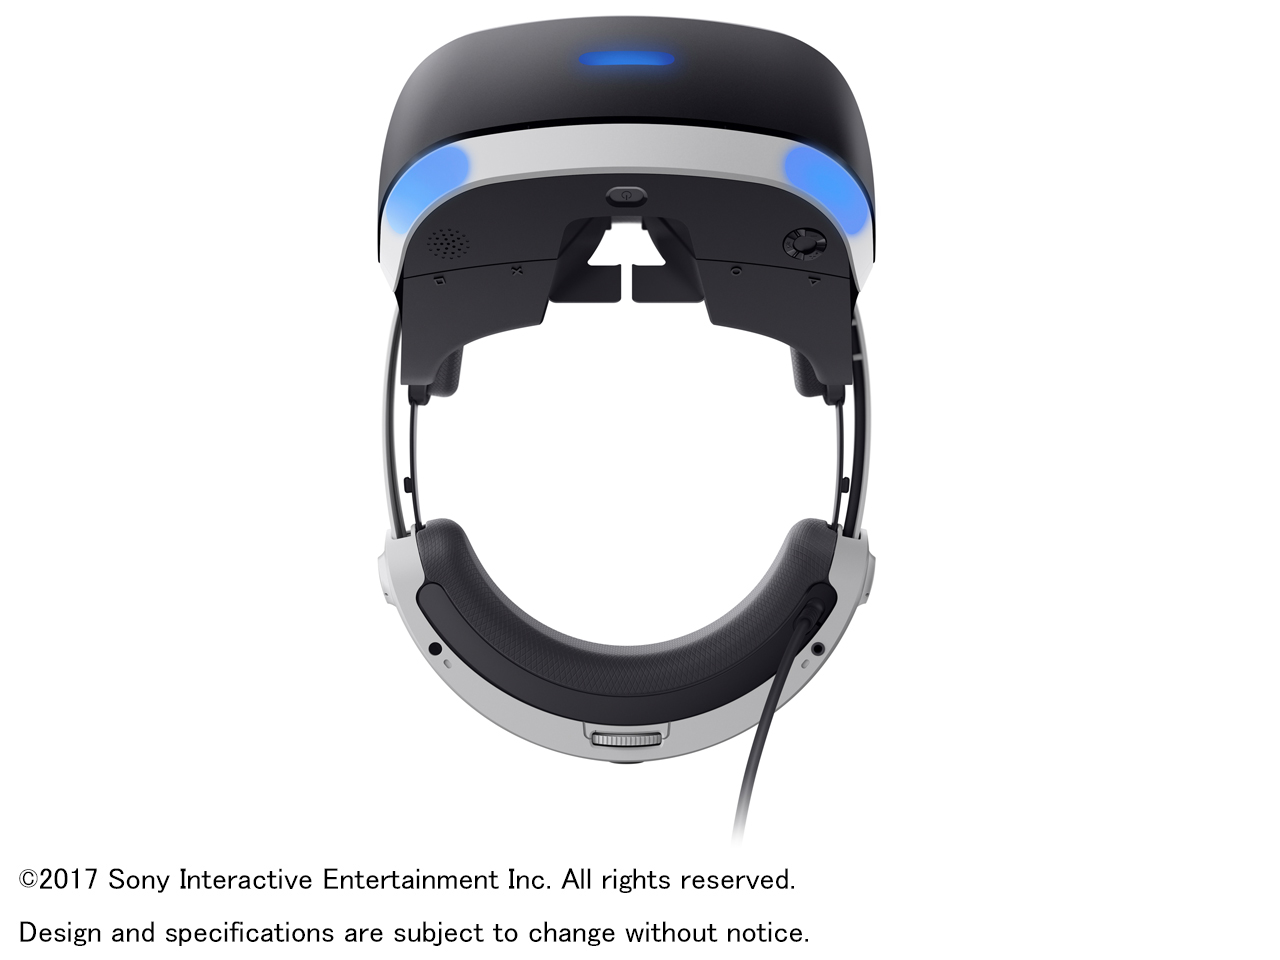 価格.com - 『本体 上面2』 PlayStation VR PlayStation Camera同梱版 CUHJ-16003 の製品画像